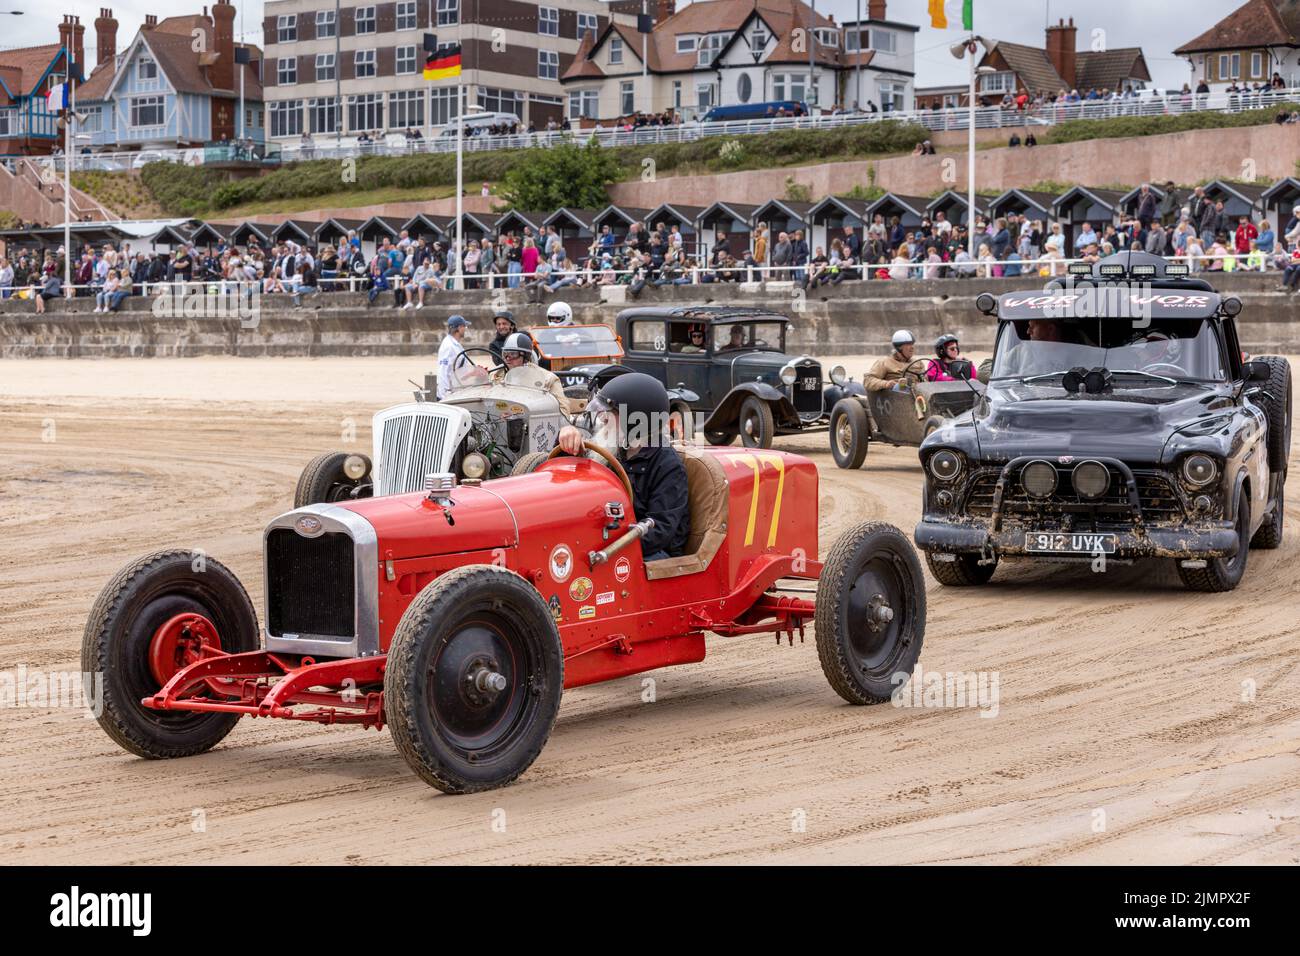 Des hot rods d'époque à l'événement « Race the Waves », où les voitures et les motos font une course sur la plage à Bridlington, dans l'est du Yorkshire, en Angleterre Banque D'Images